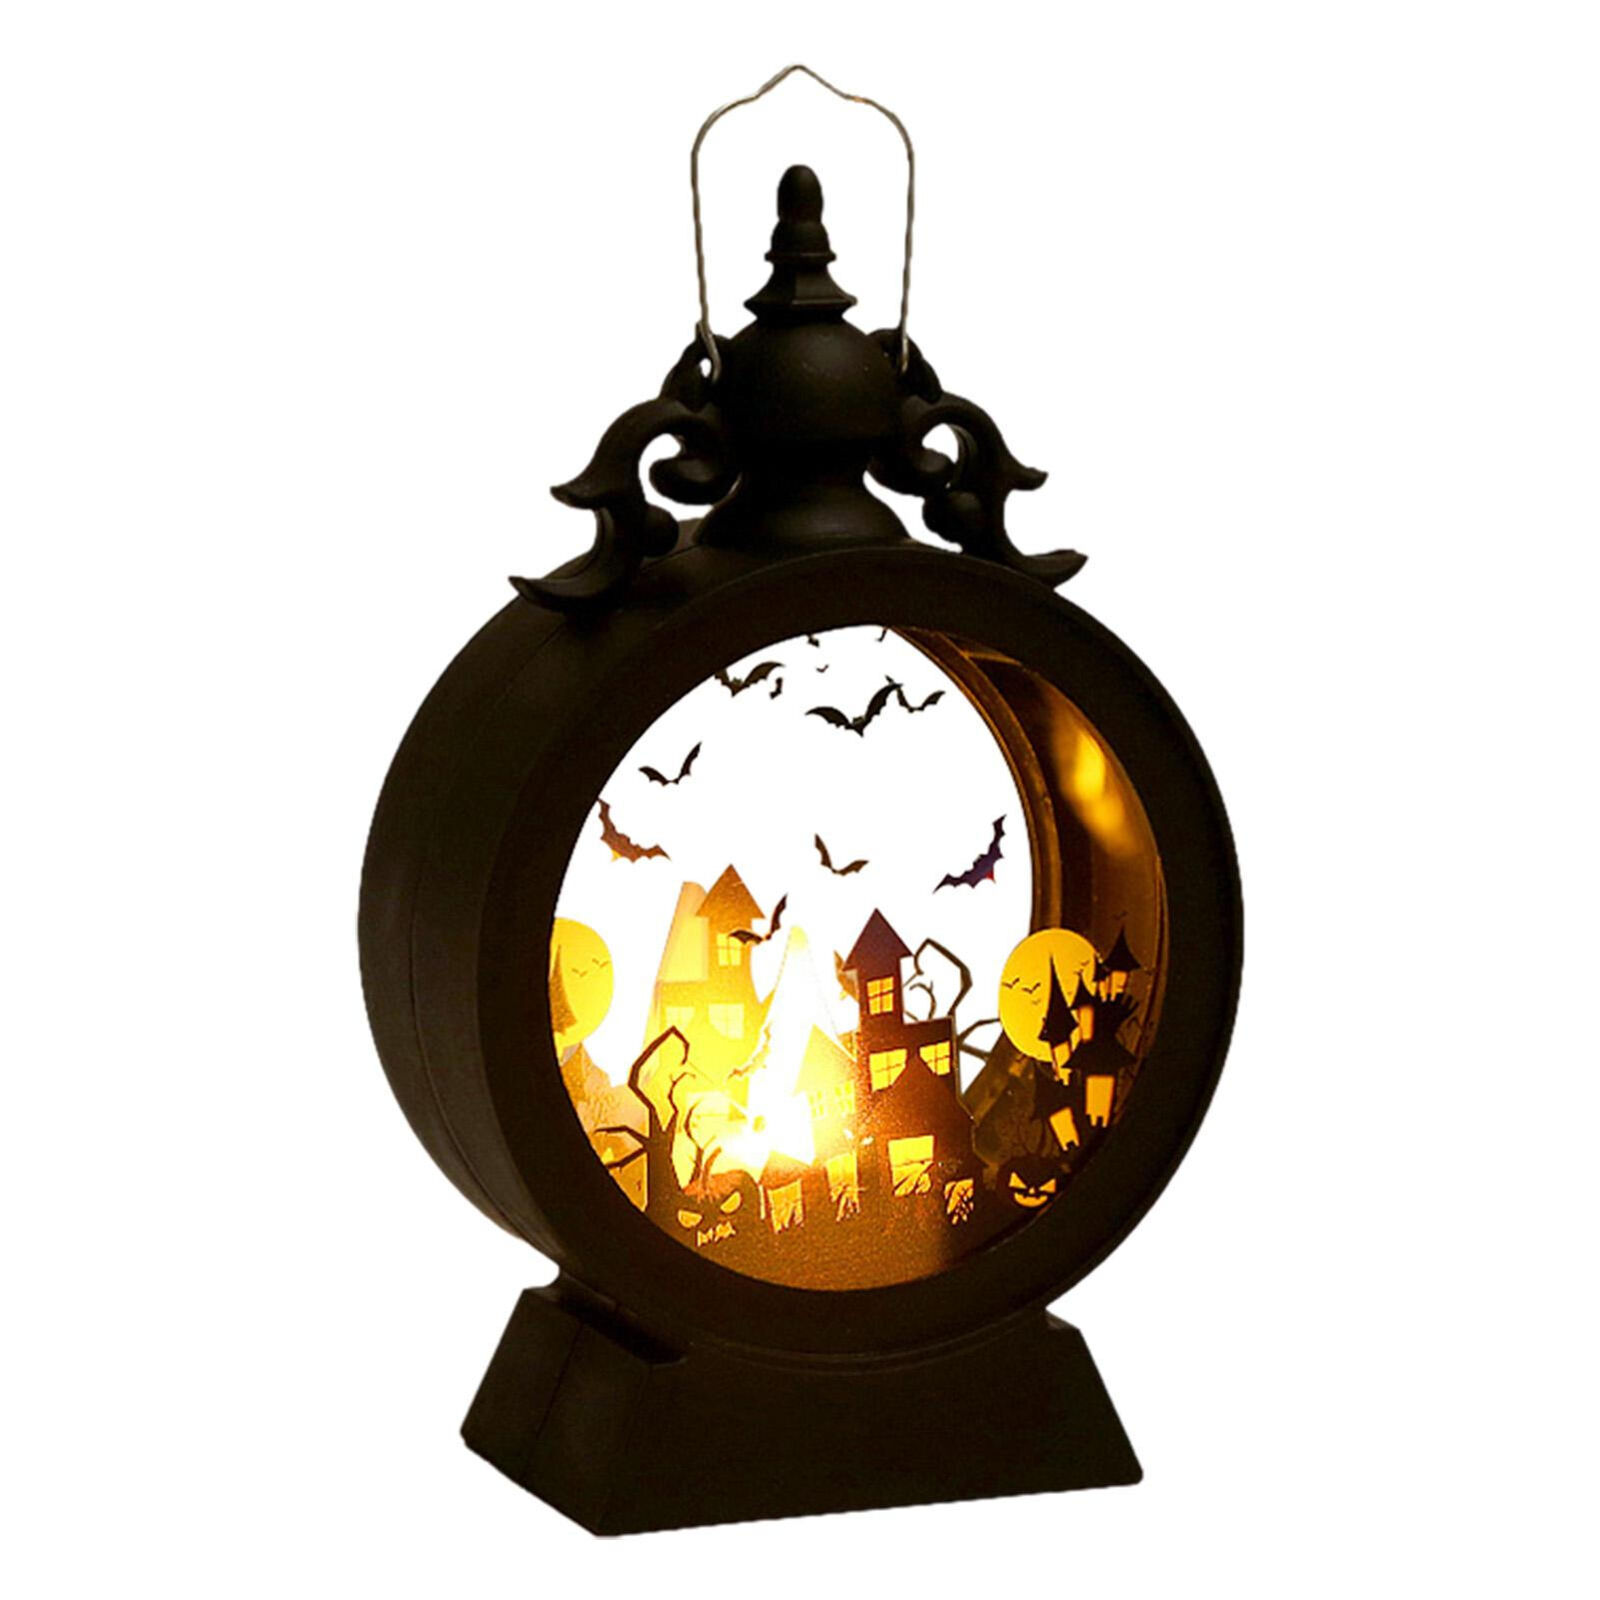 Halloween LED Lamp Decorative Gothic Vintage LED Lantern Hanging Decor